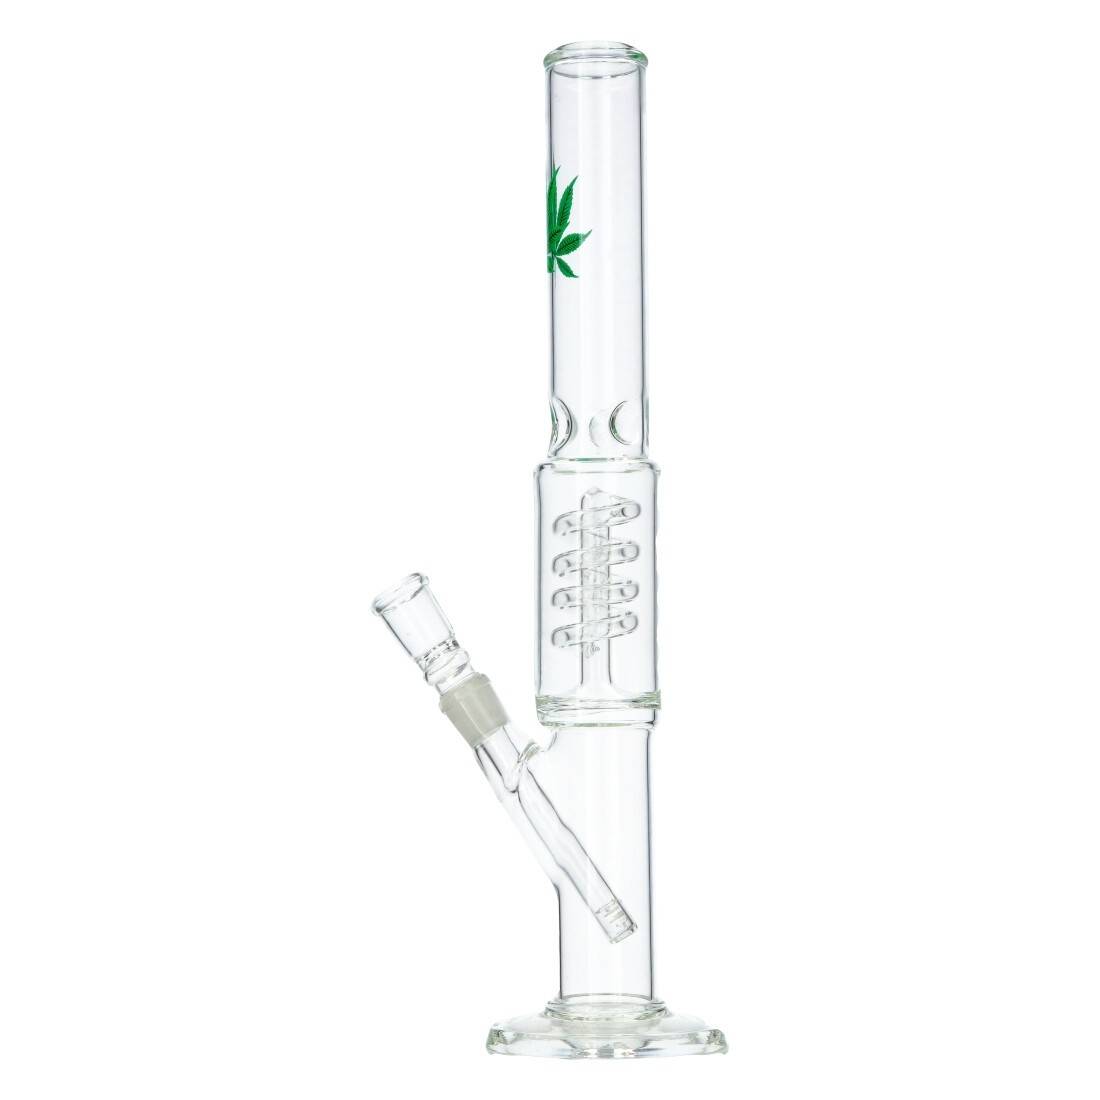 Bang en verre type ice bang avec feuilles de cannabis en décoration.